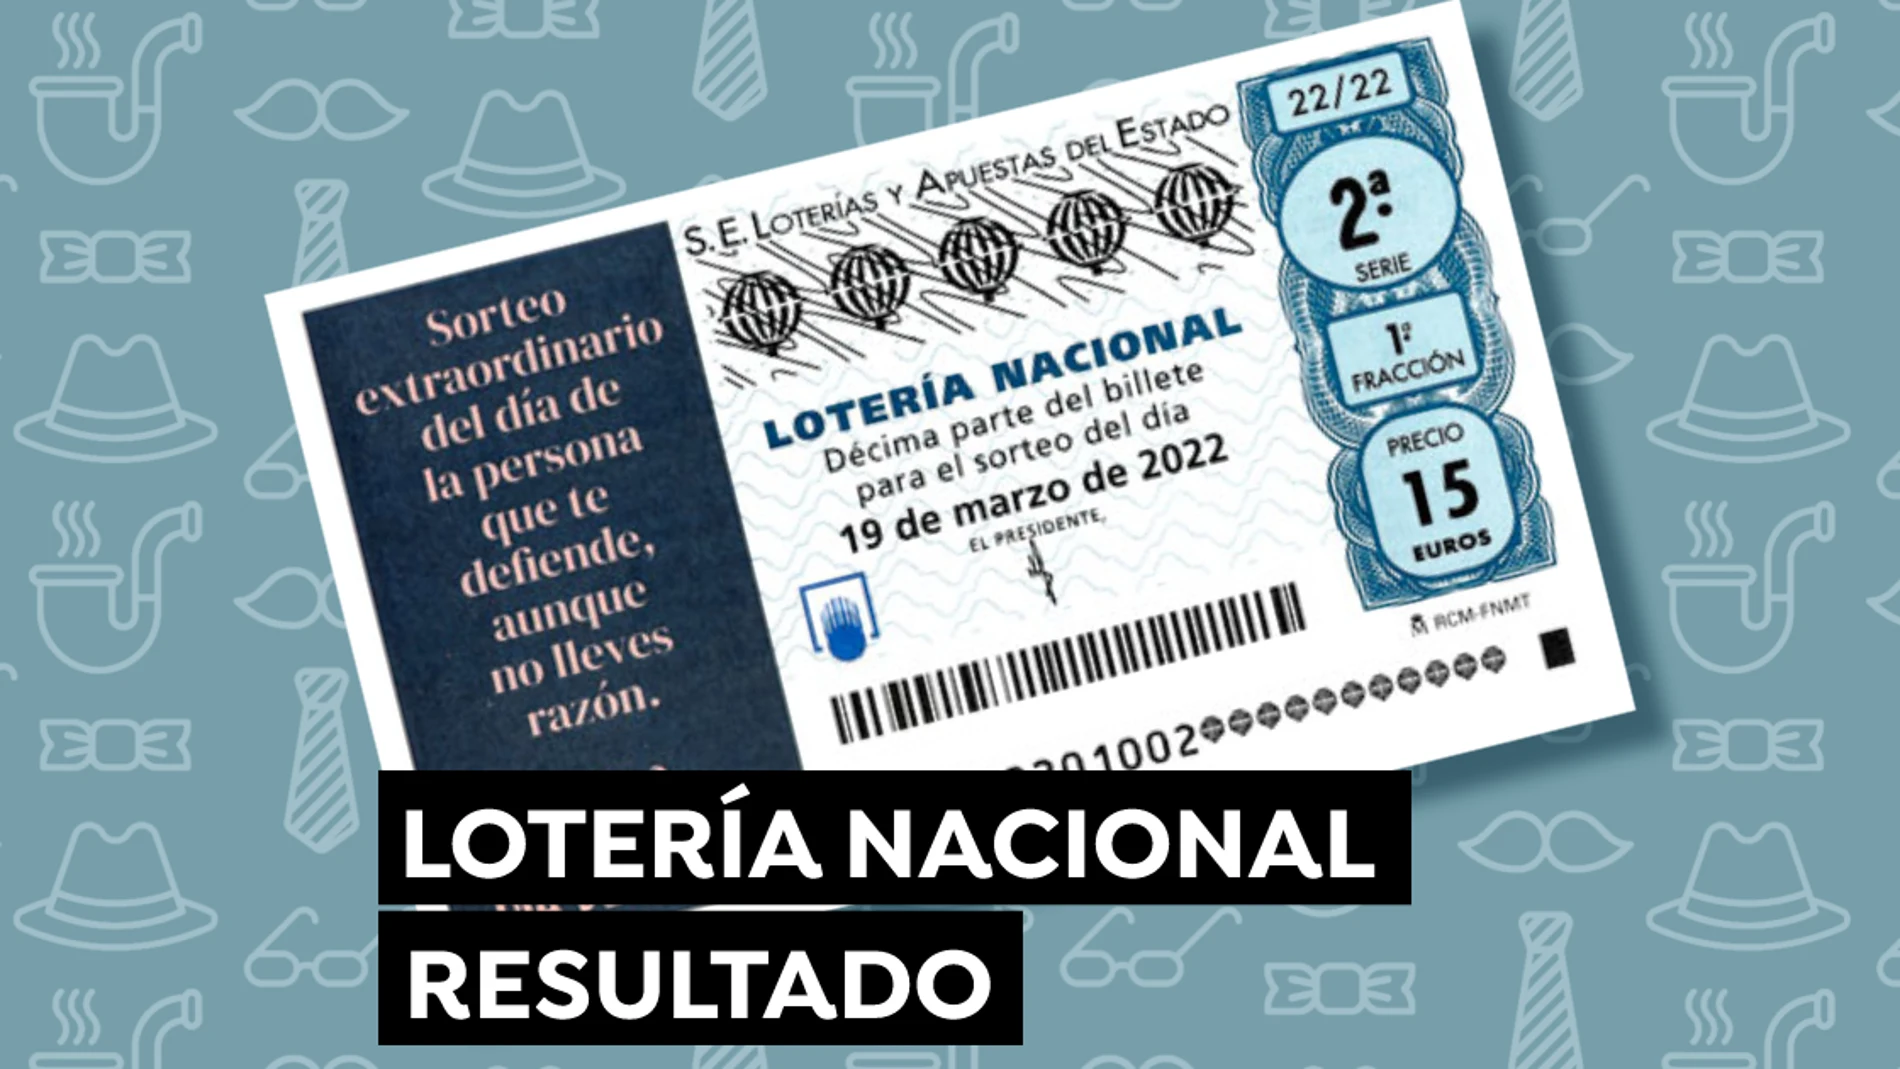 Comprobar Lotería Nacional: Resultado del Sorteo Extraordinario del Día del Padre 2022